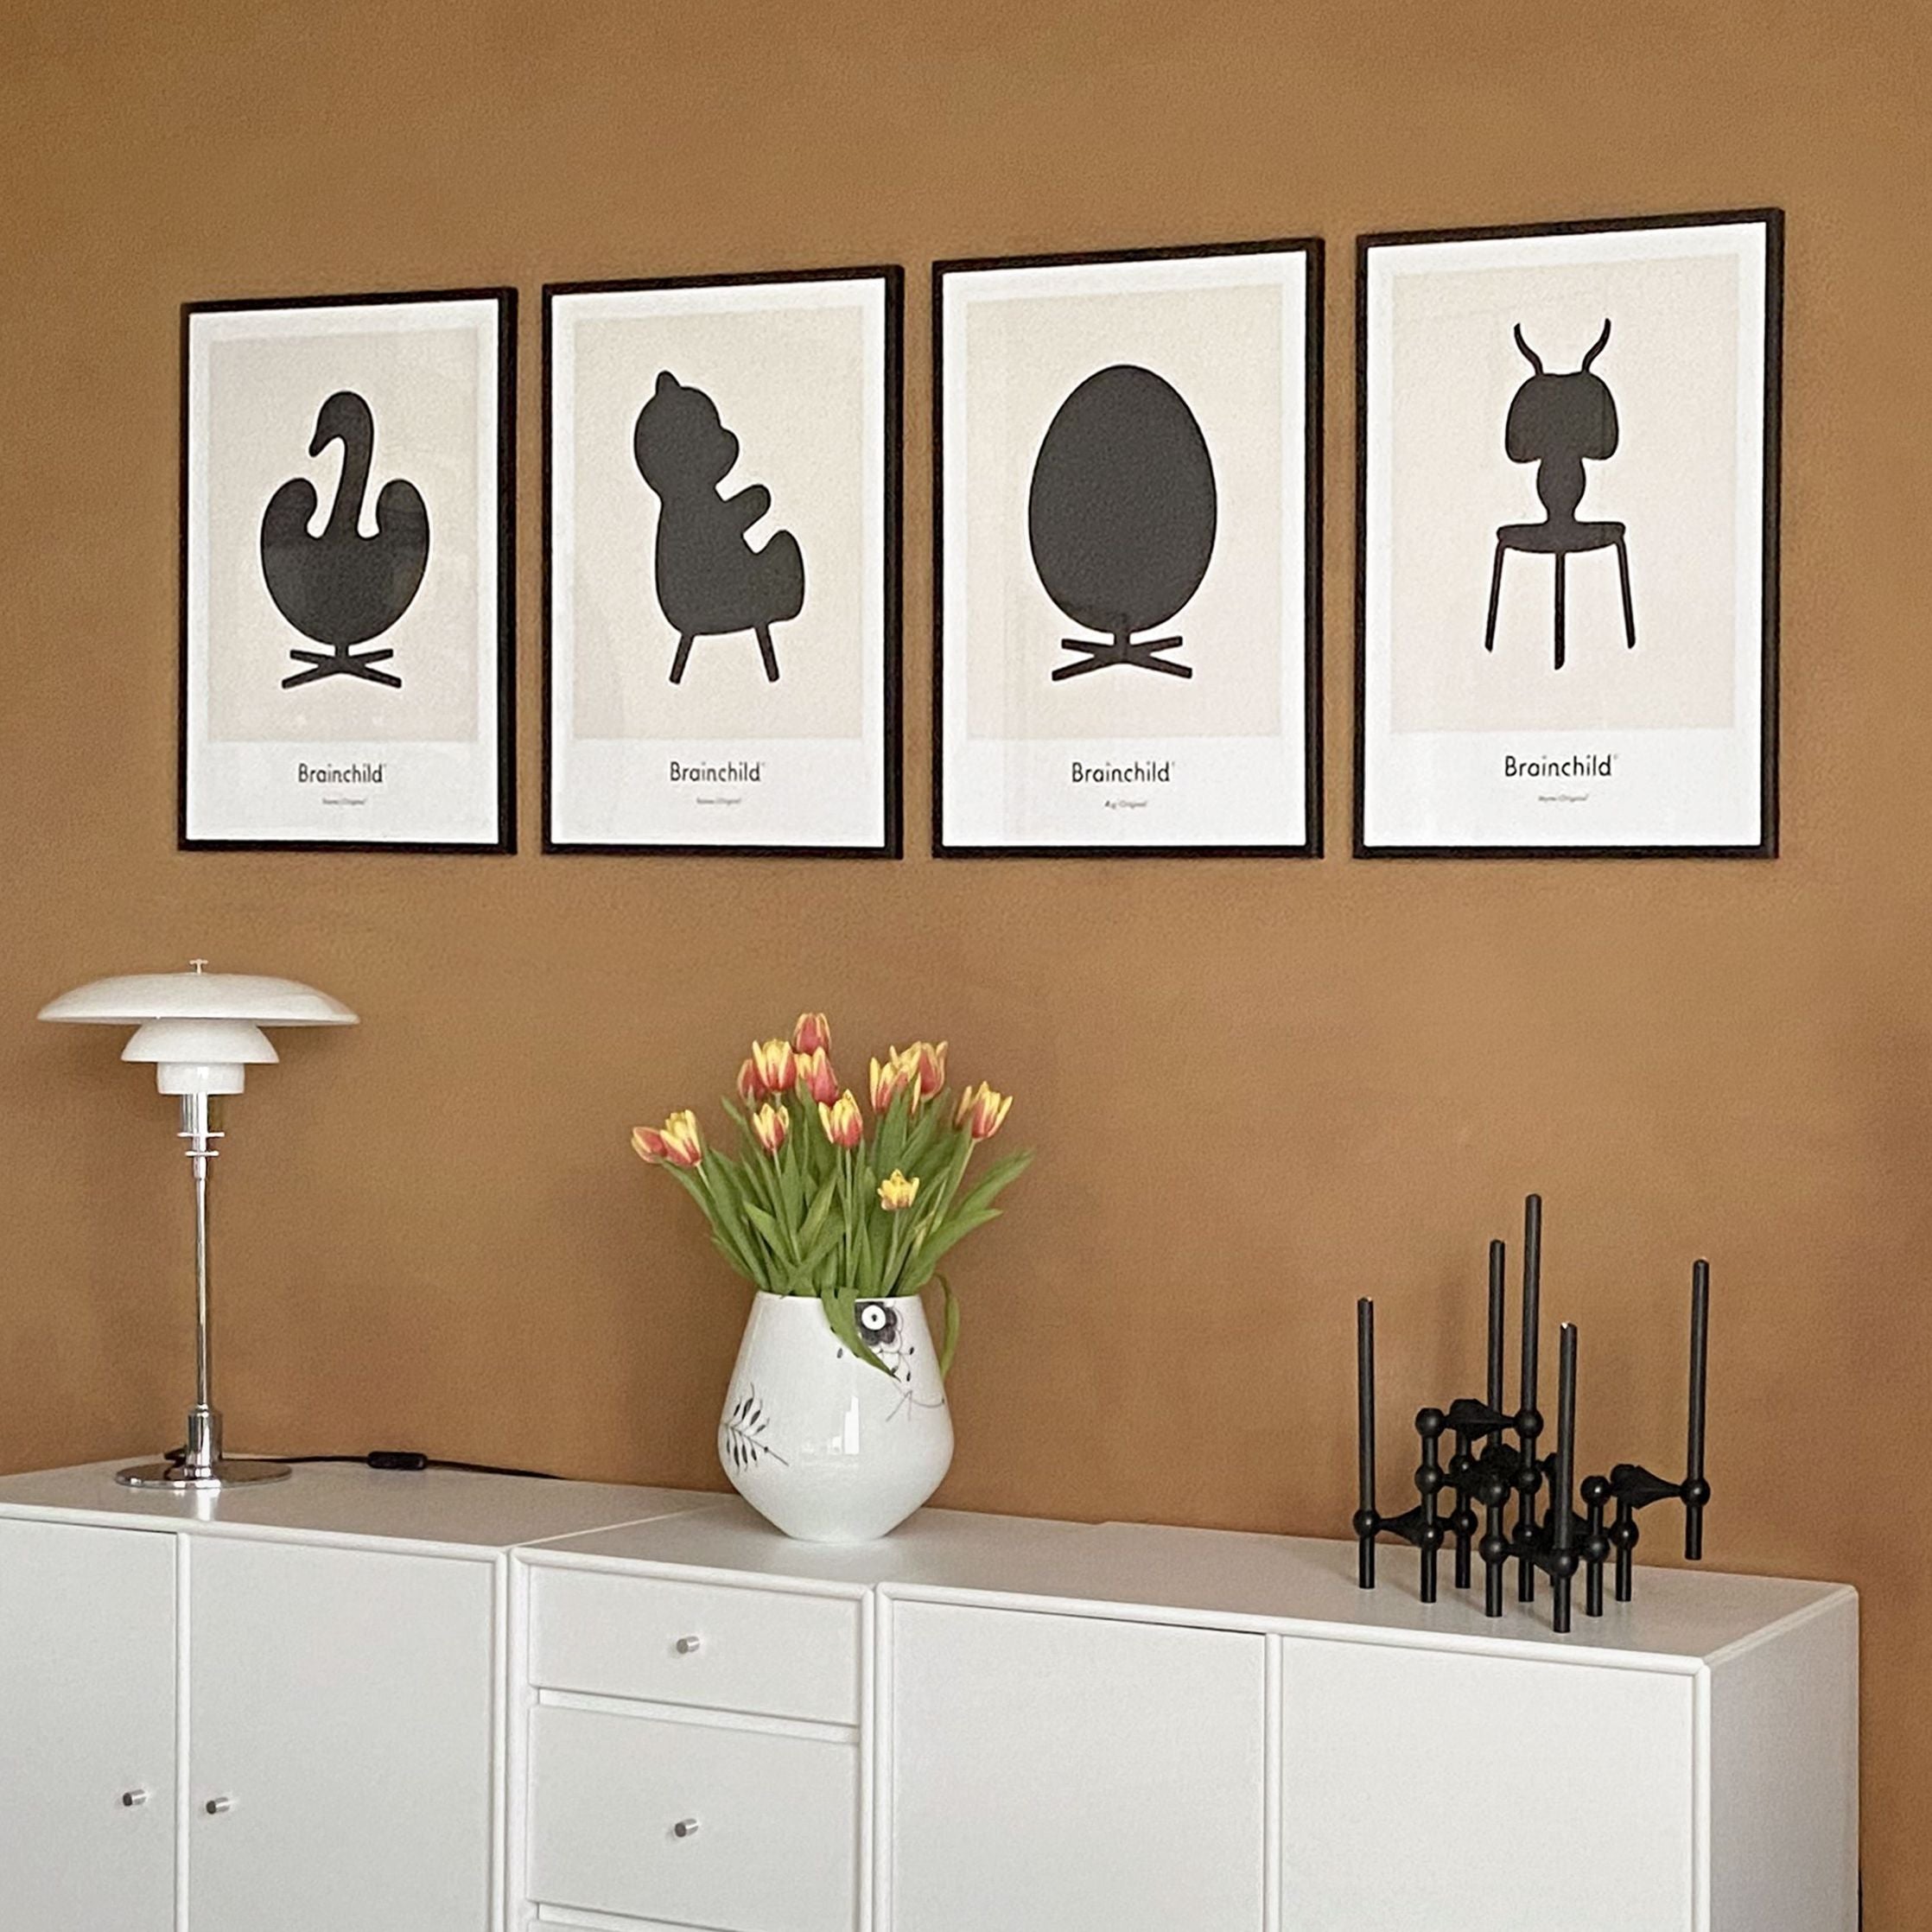 创意蚂蚁设计图标海报，框架由黑色漆木制成50 x70厘米，灰色